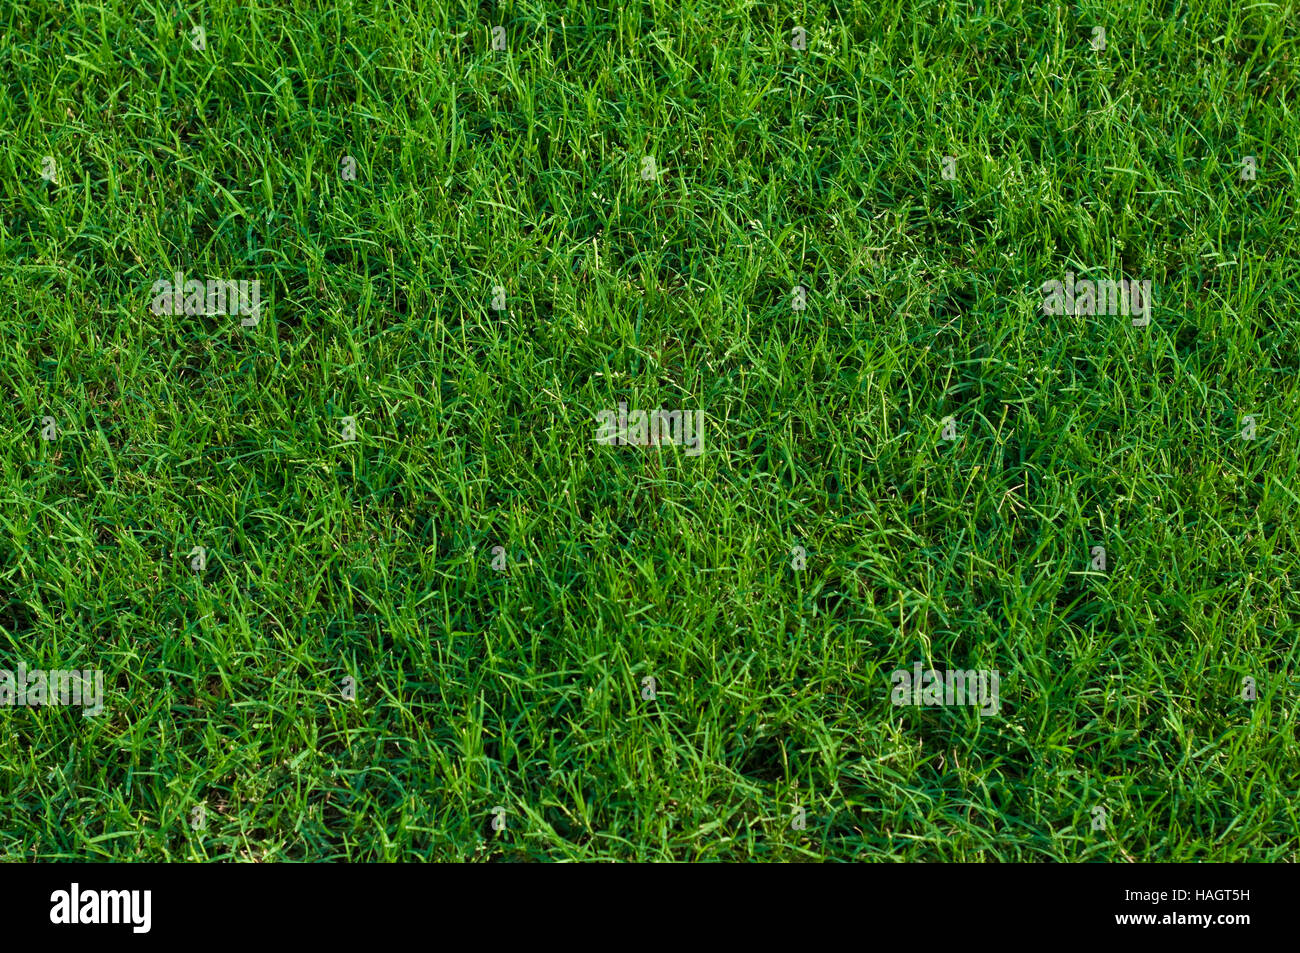 Hintergrund grün angelegten Bermudagras hautnah. Stockfoto